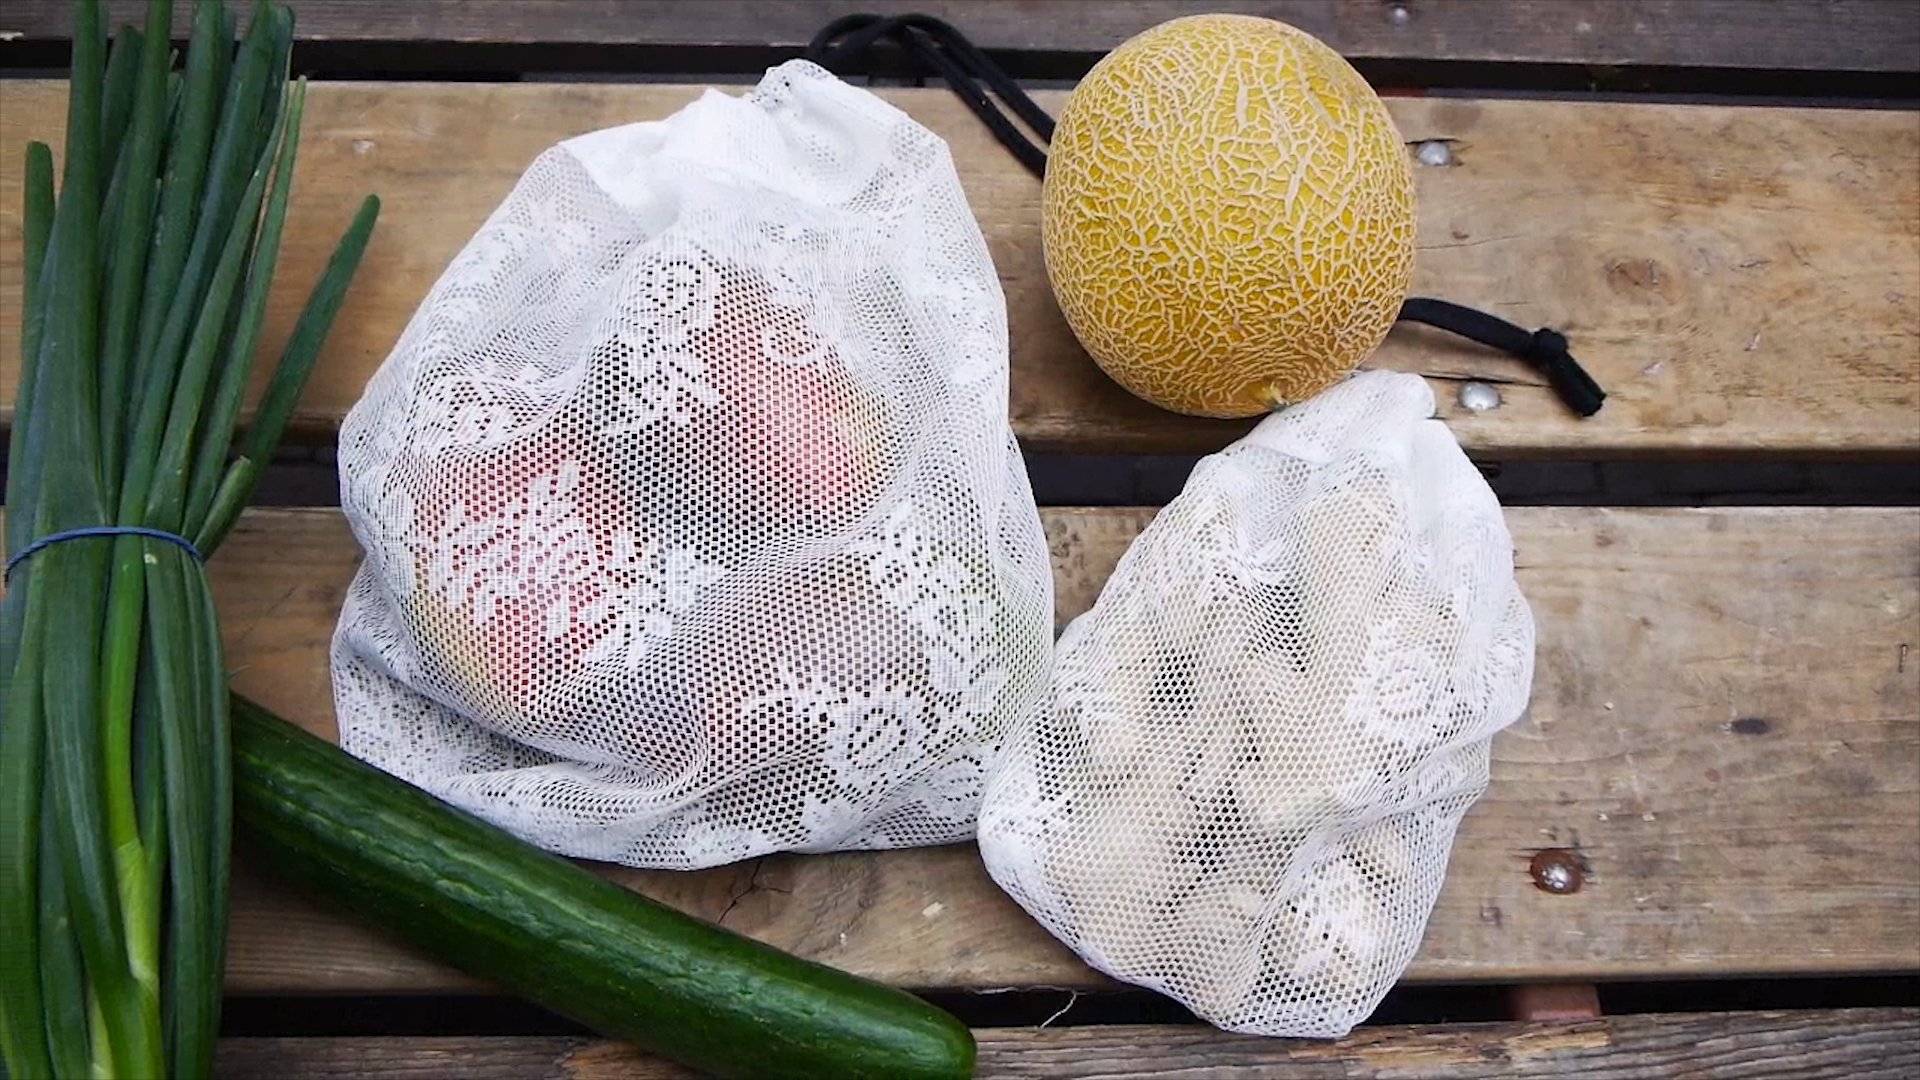 Groente- en fruitzakje naaien van vitrage (3 minuten DIY)